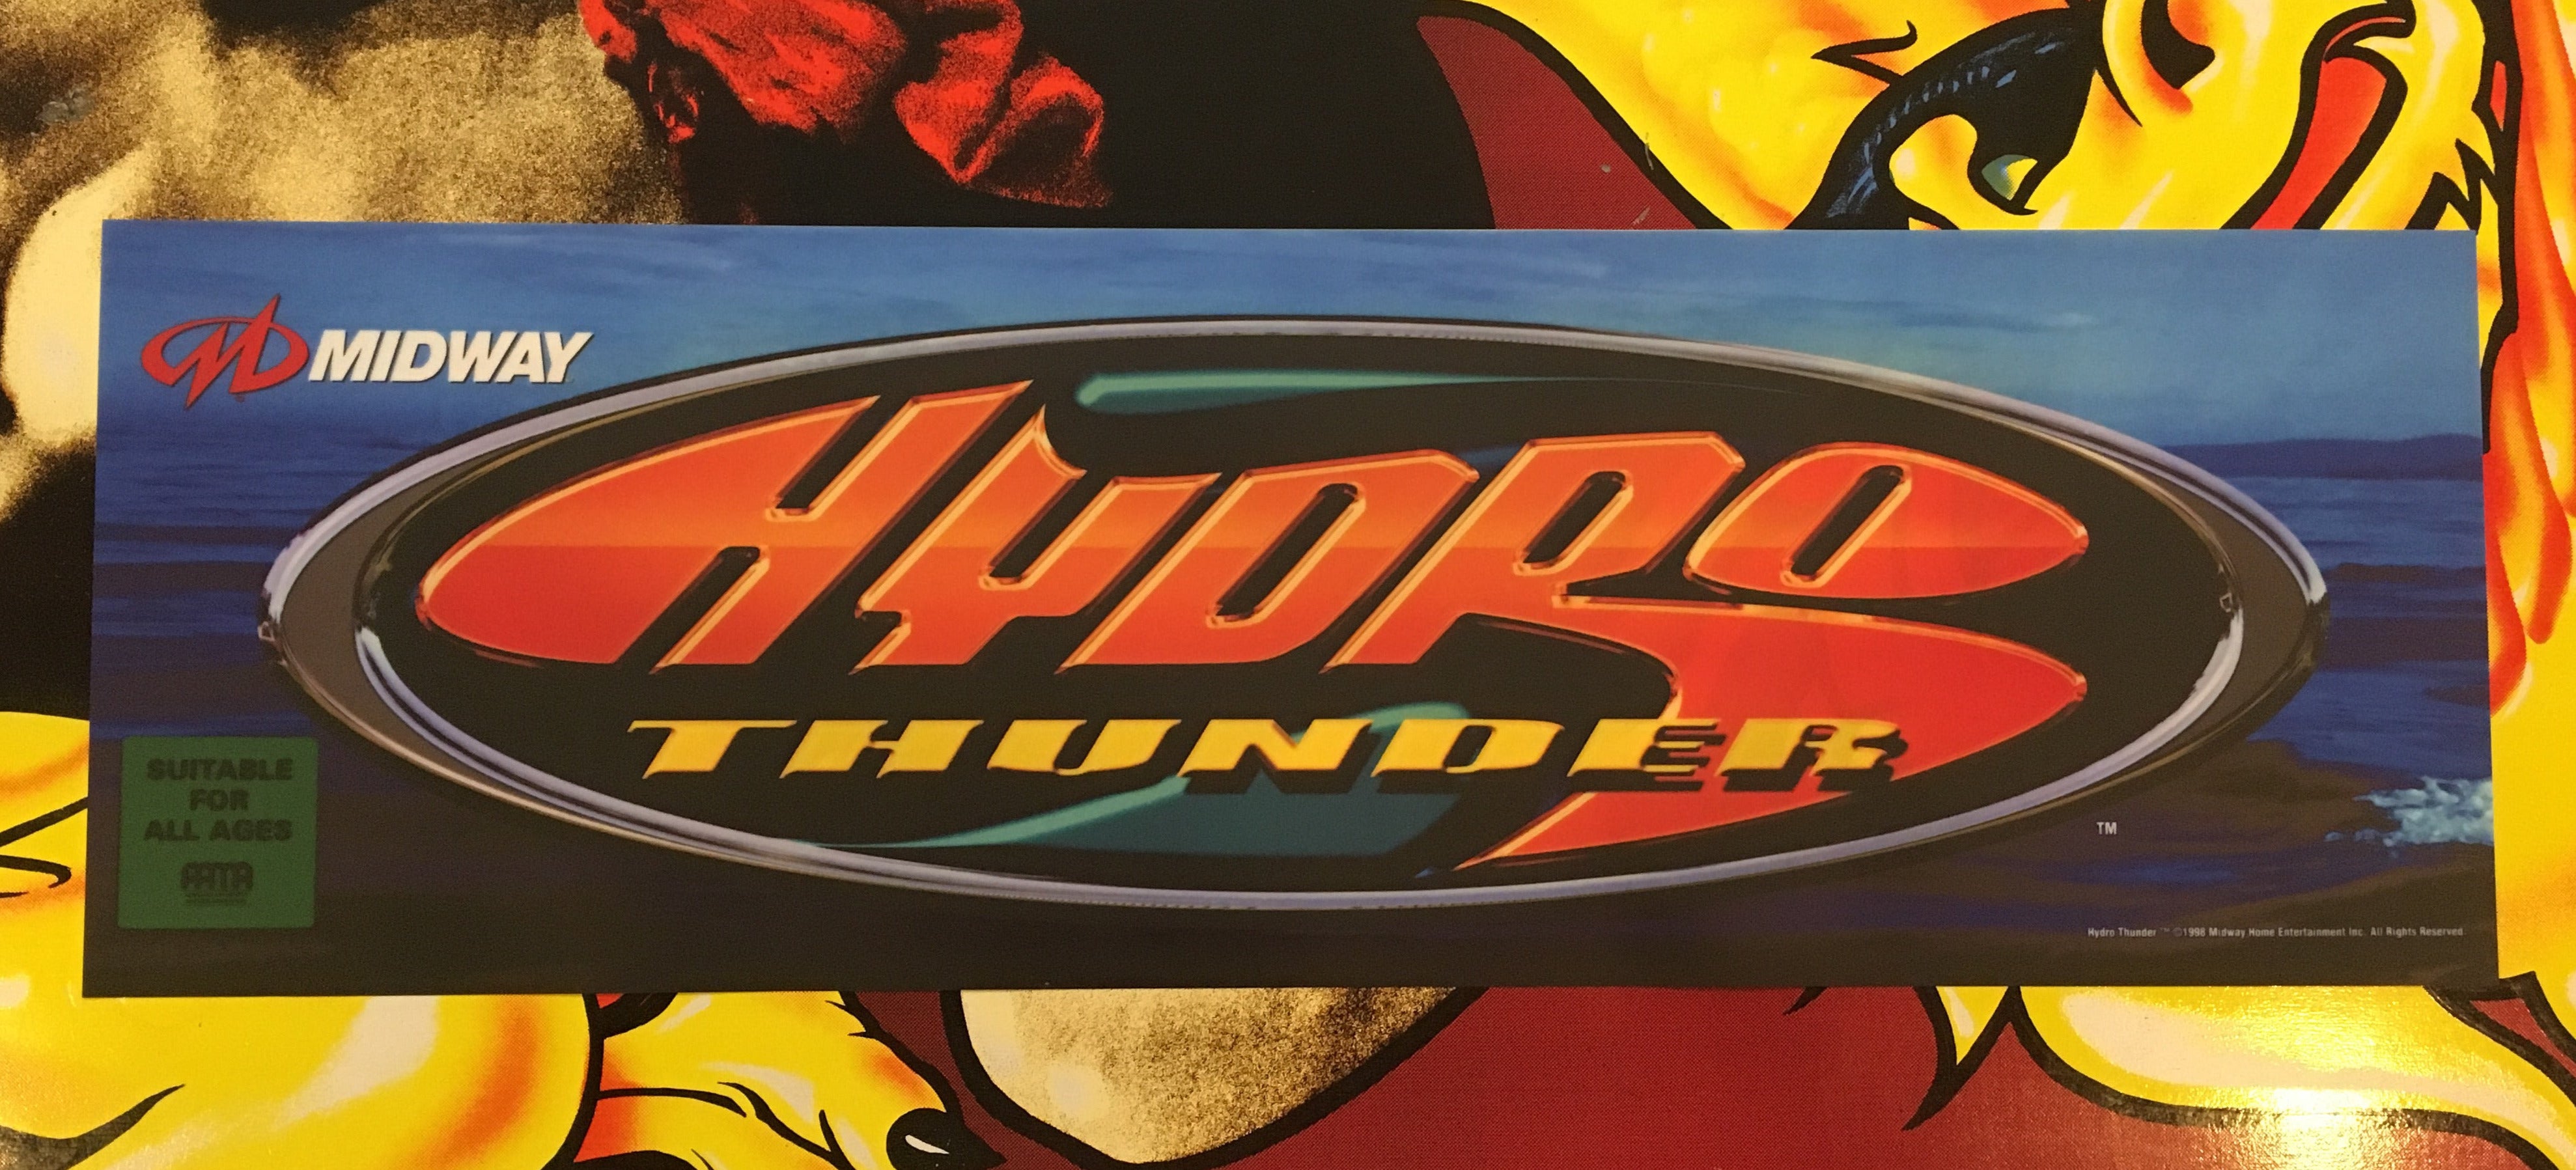 Carpa Hydro Thunder